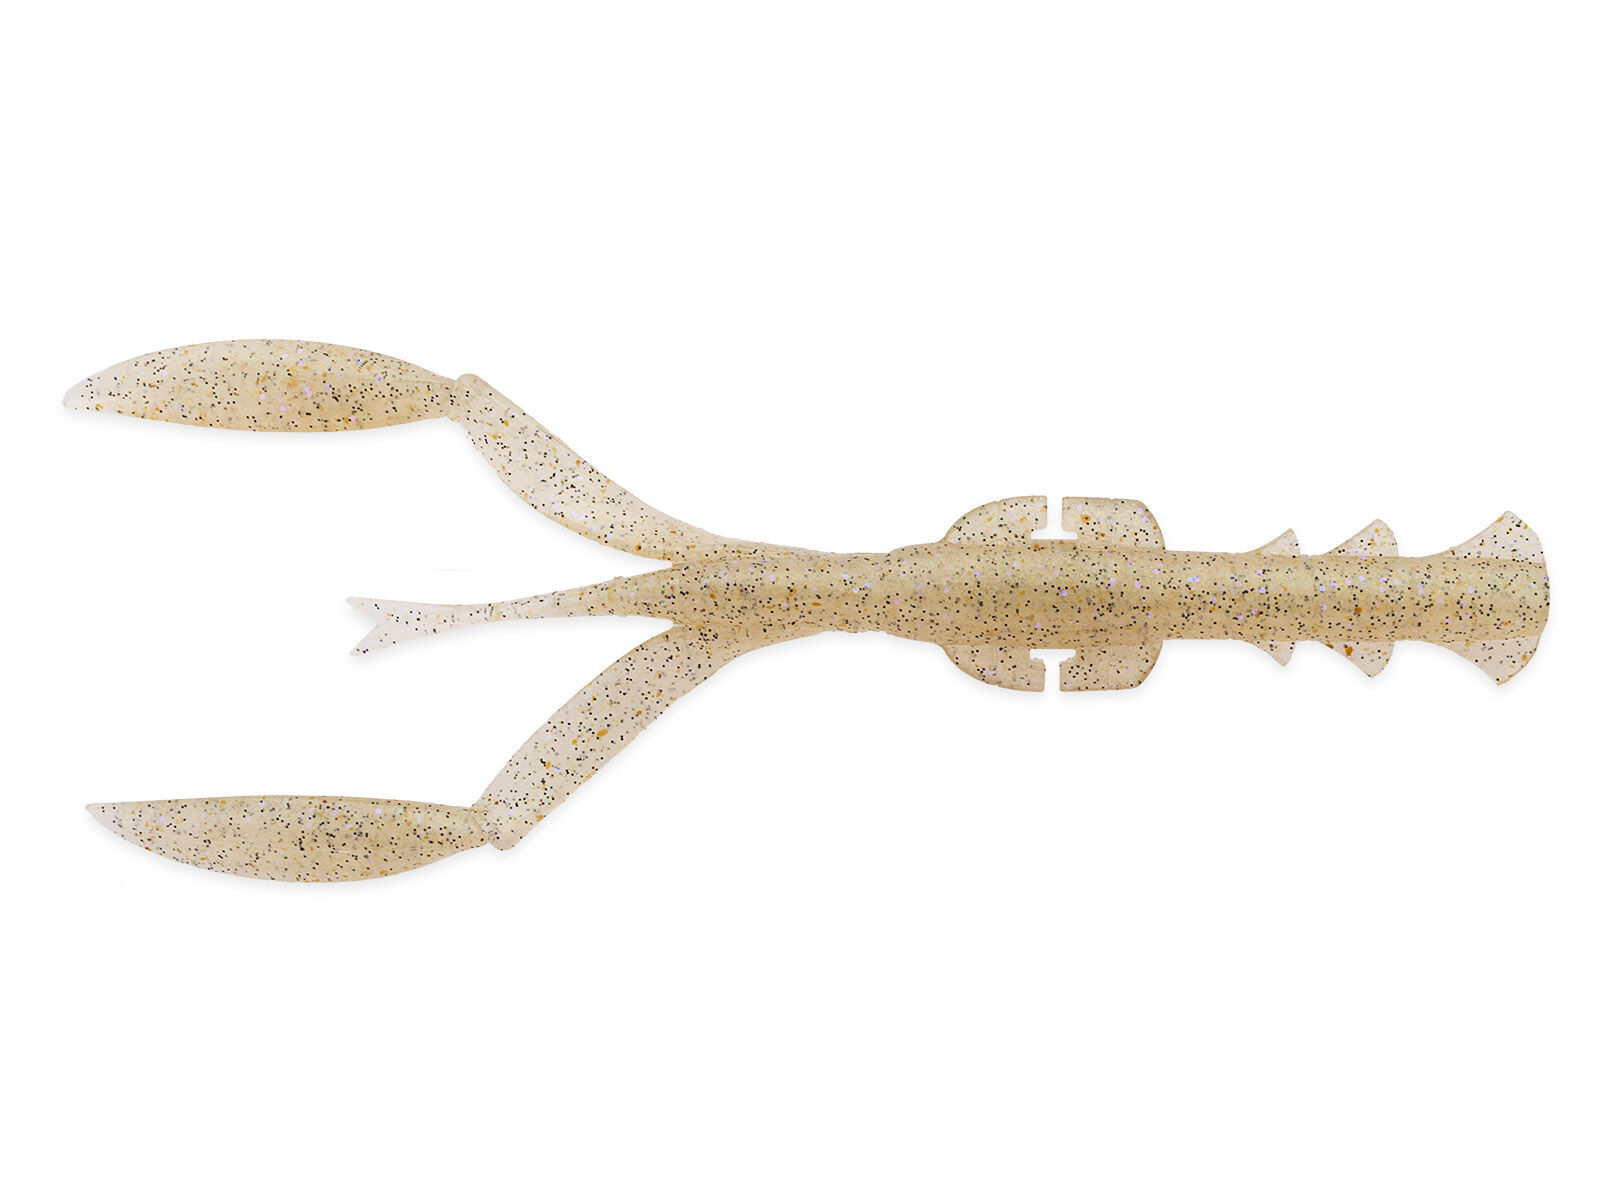 5.5" Neco Camaron - Crystal Shrimp